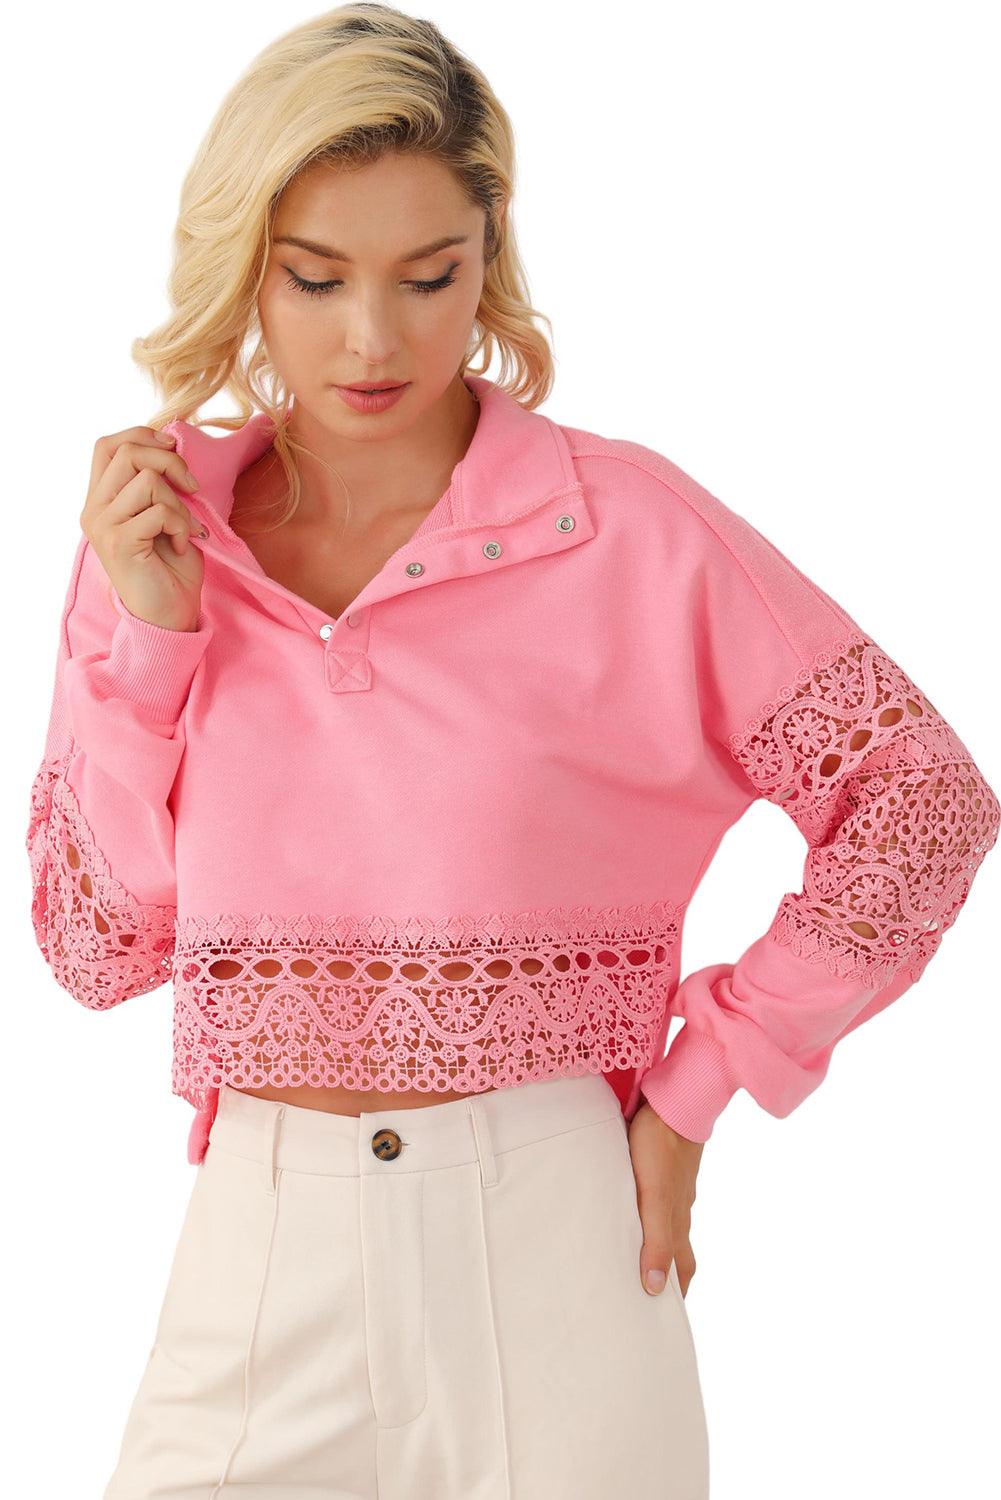 Rosafarbenes, kurzes Sweatshirt mit ausgehöhlter Spitze und Spleißen